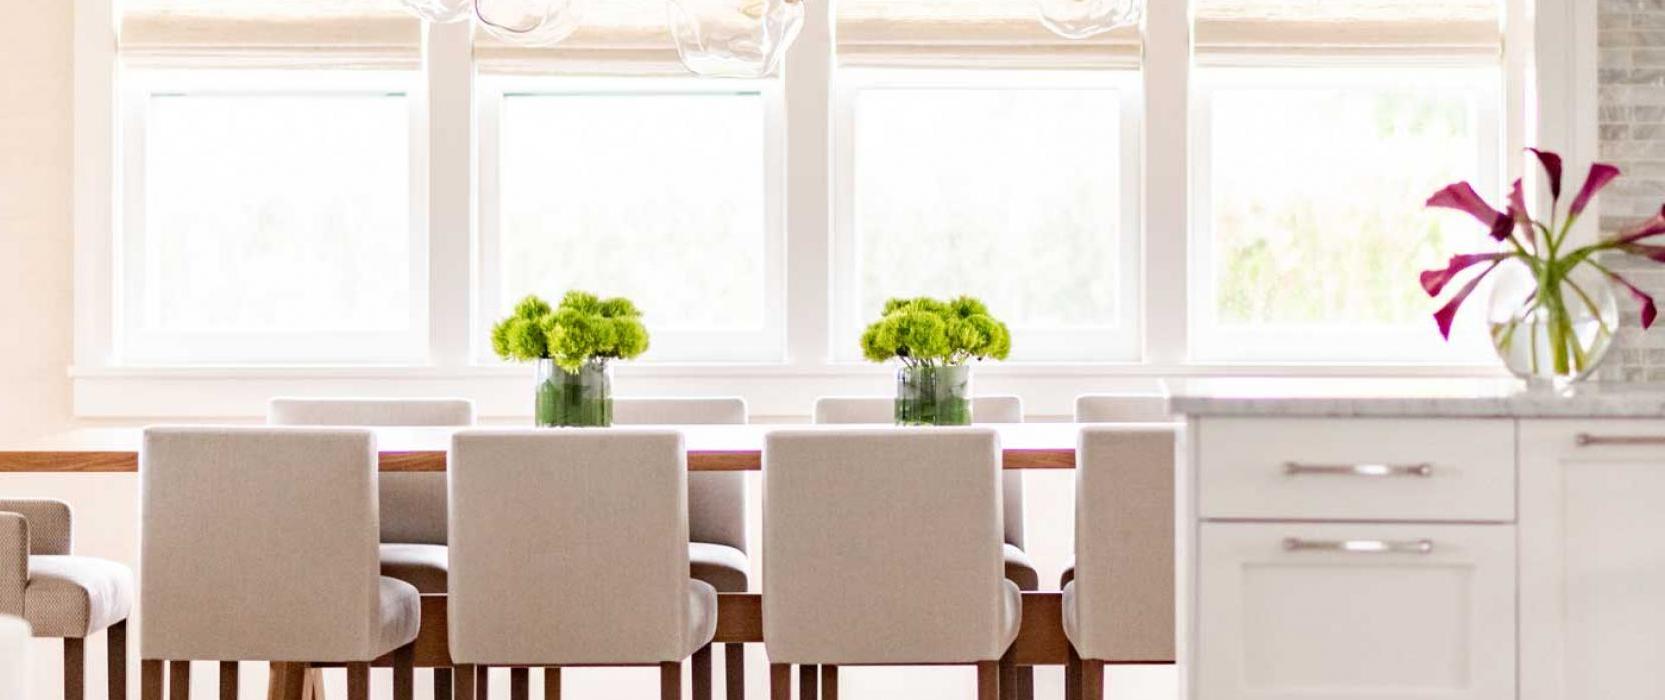 厨房桌子上有绿色植物和窗户的墙壁